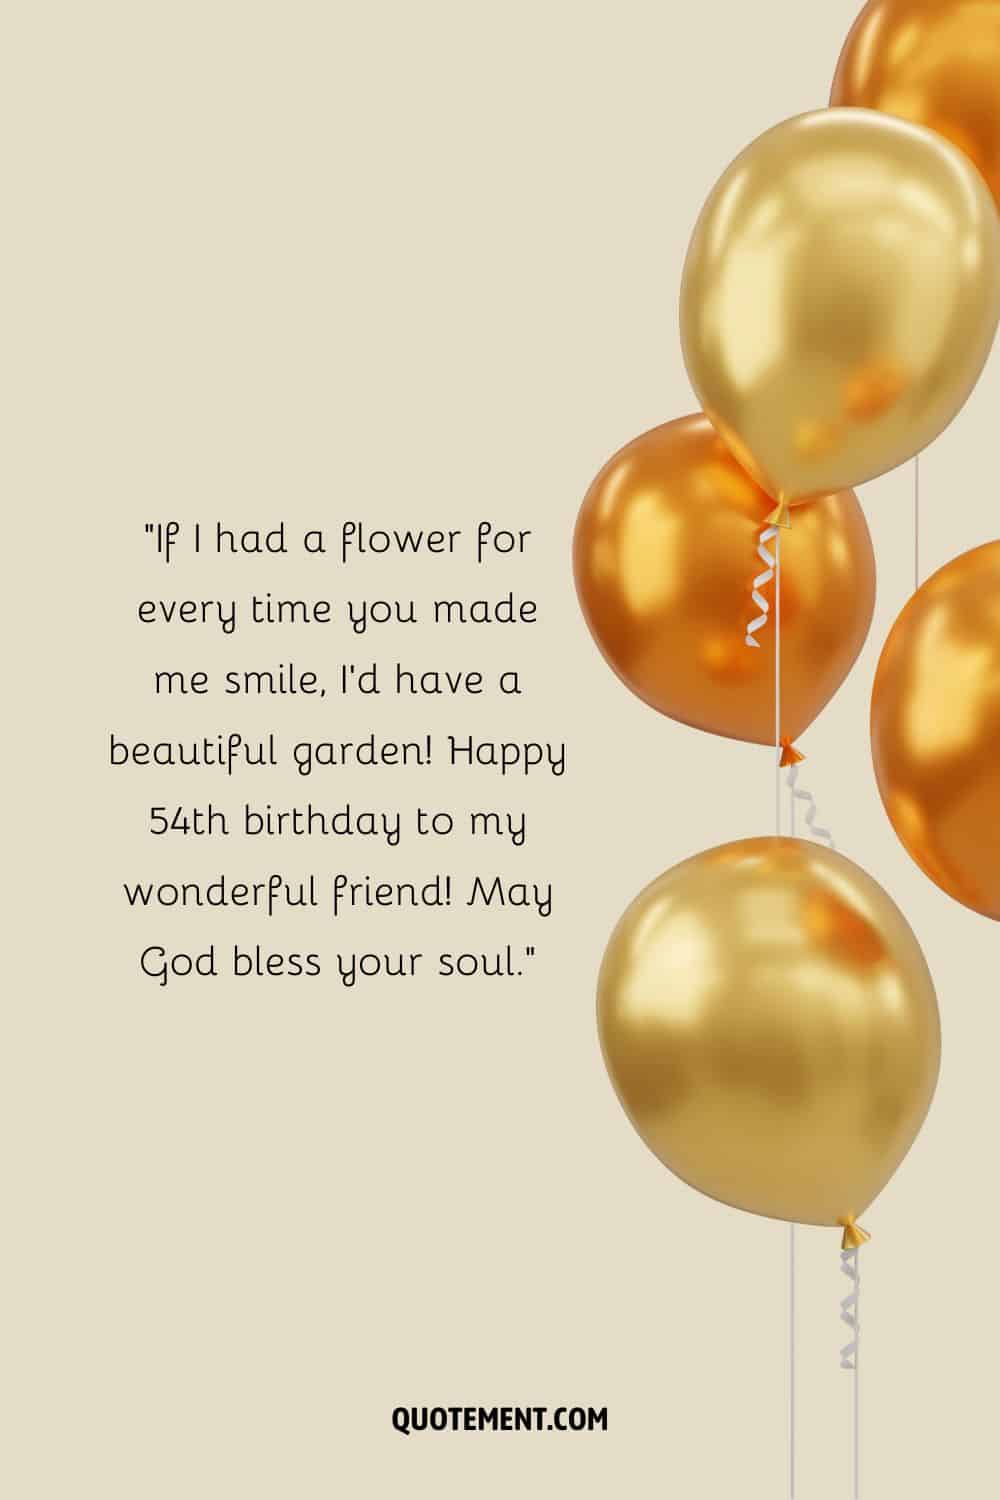 Sentido mensaje para el 54 cumpleaños de un amigo y cinco globos al lado